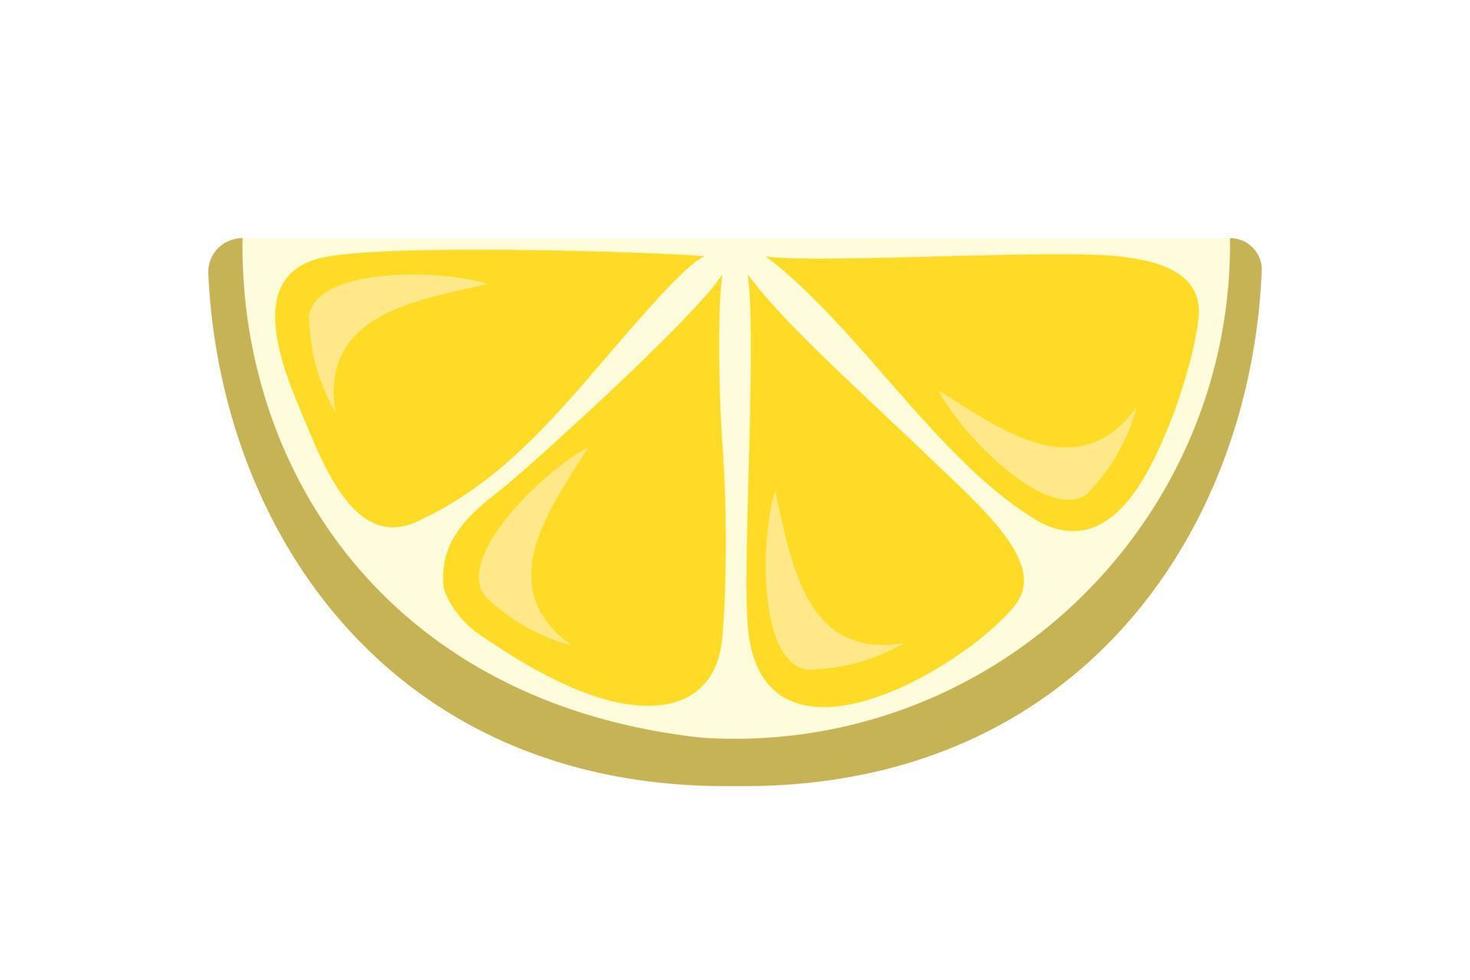 immagine vettoriale di una fetta di limone con un contorno nero. illustrazione vettoriale a colori, icona, per la progettazione di prodotti, stampa su tessuti, biglietti da visita, logo, tatuaggi